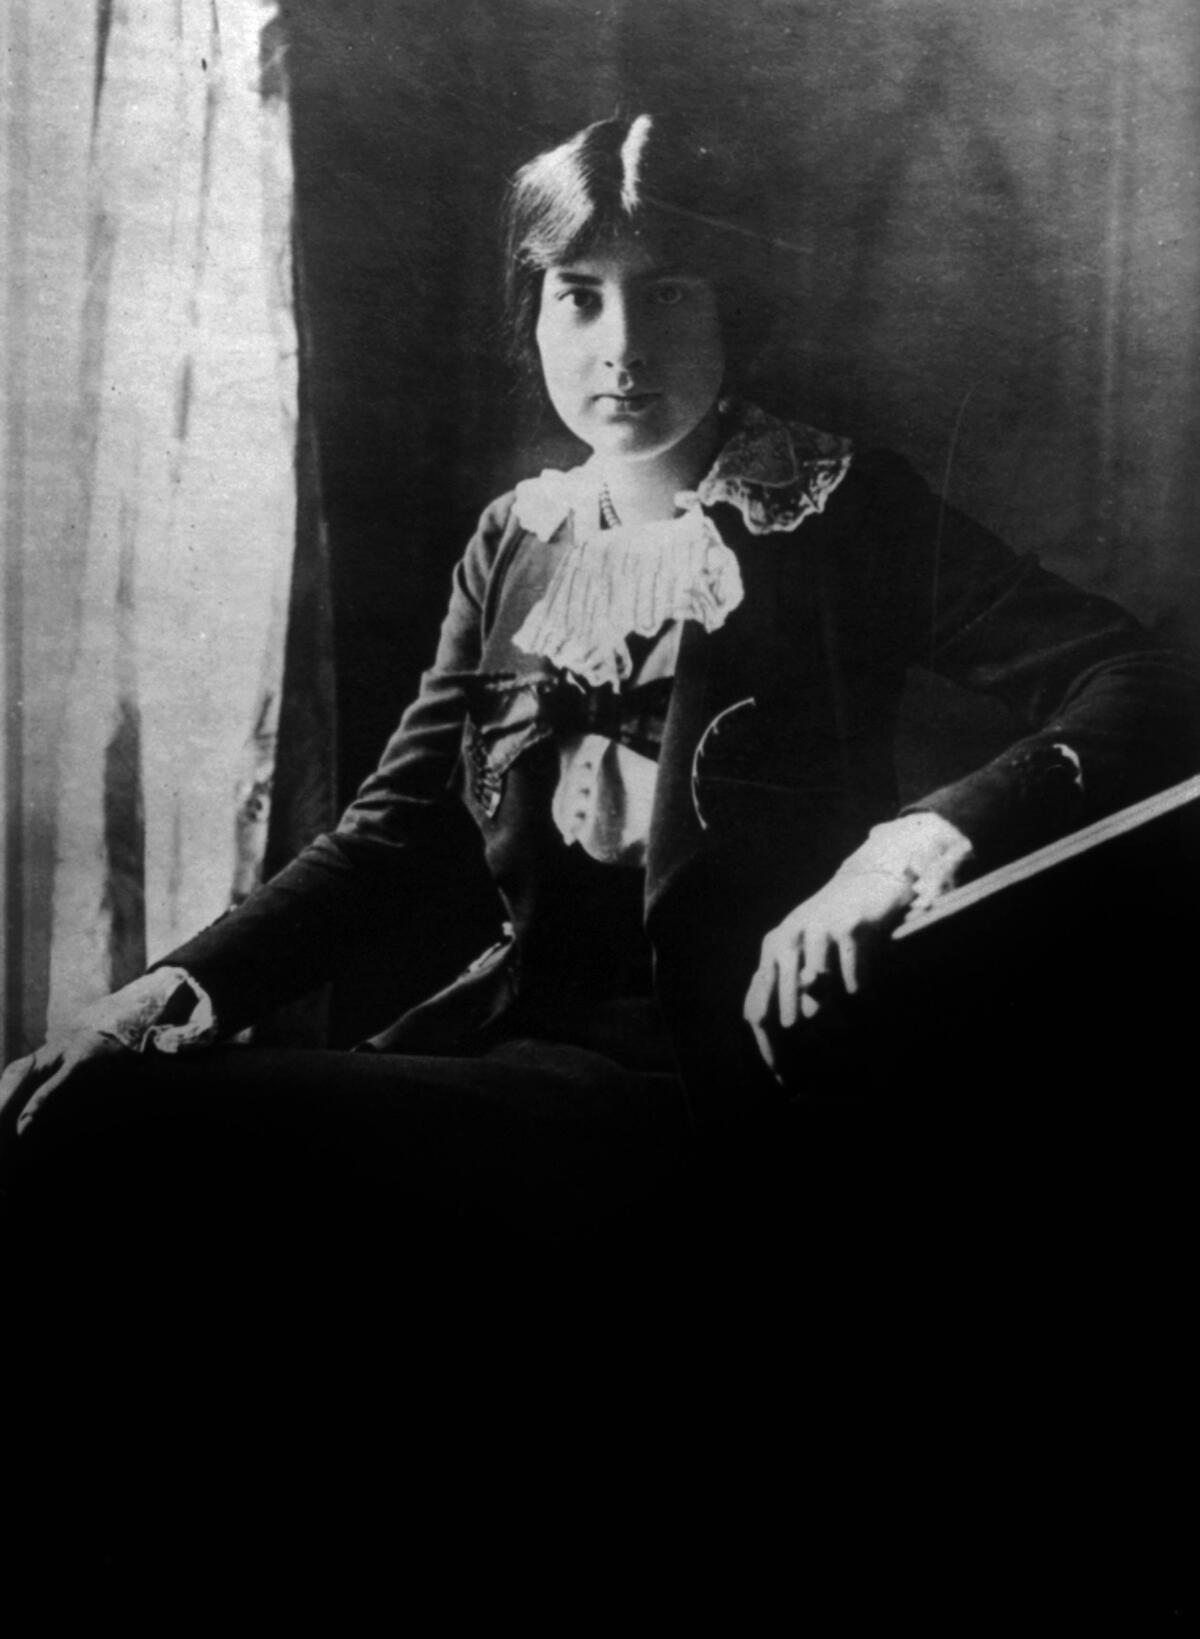 French composer Juliette "Lili" Boulanger 